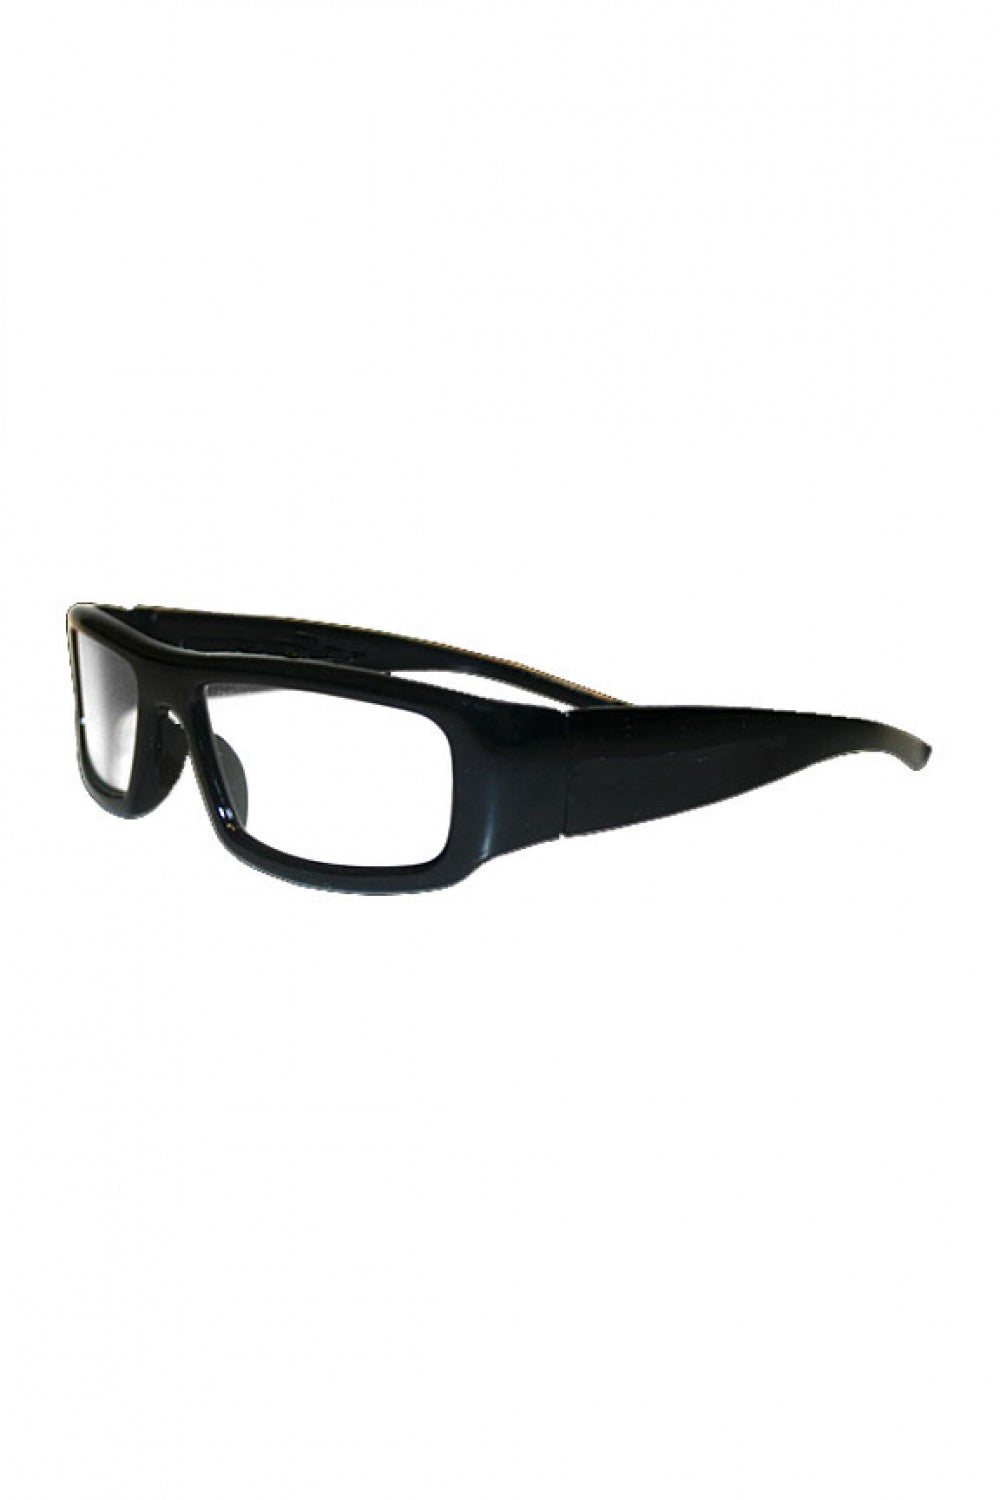 Deluxe Plastic 3-D Glasses - eDeadShop